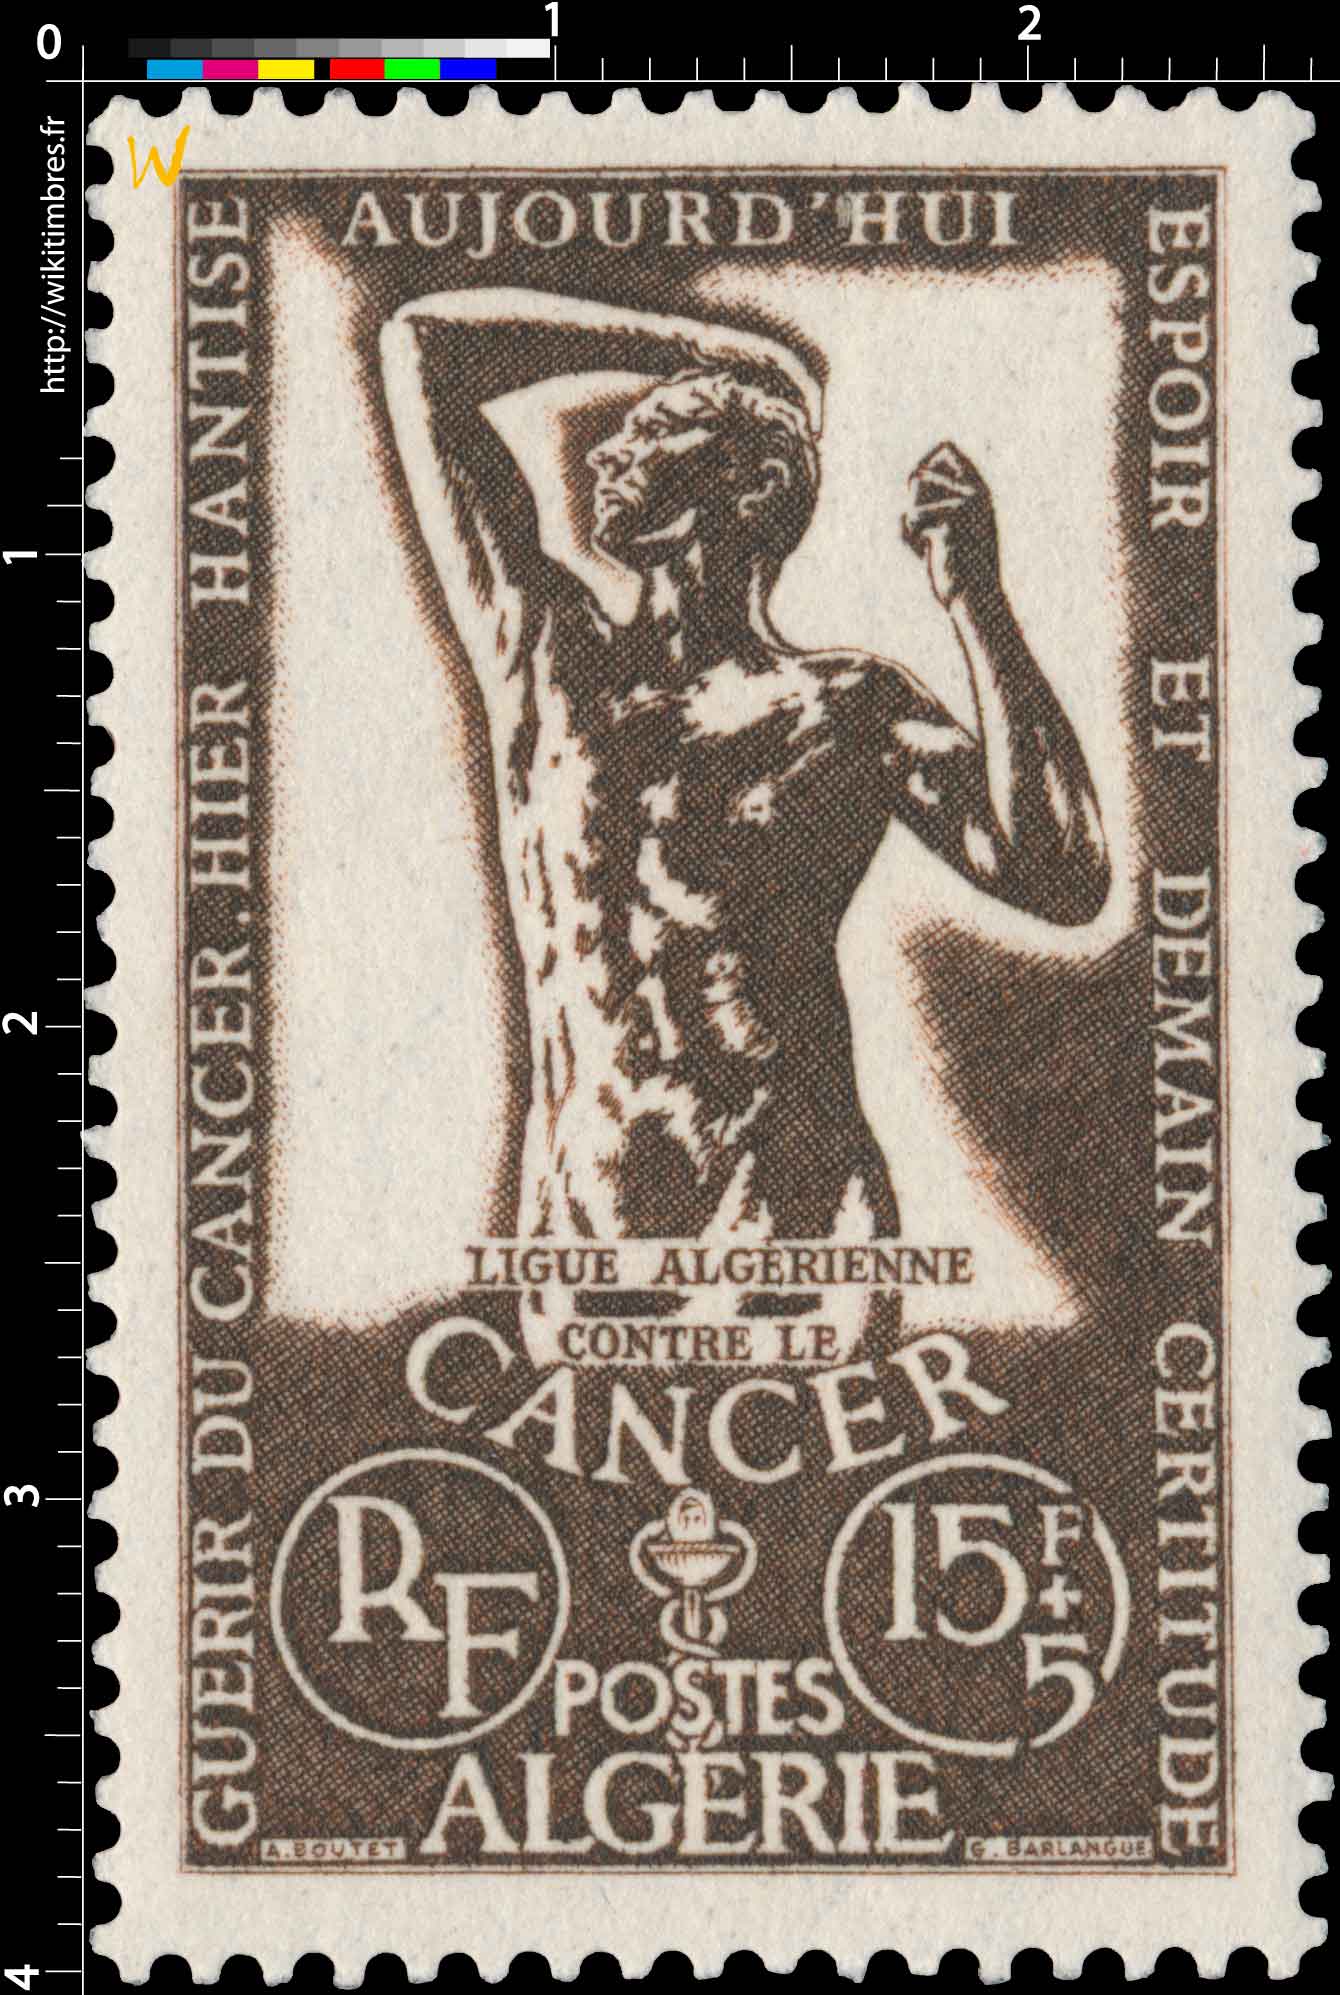 Algérie - Journée du timbre 1956 F. de Tassis